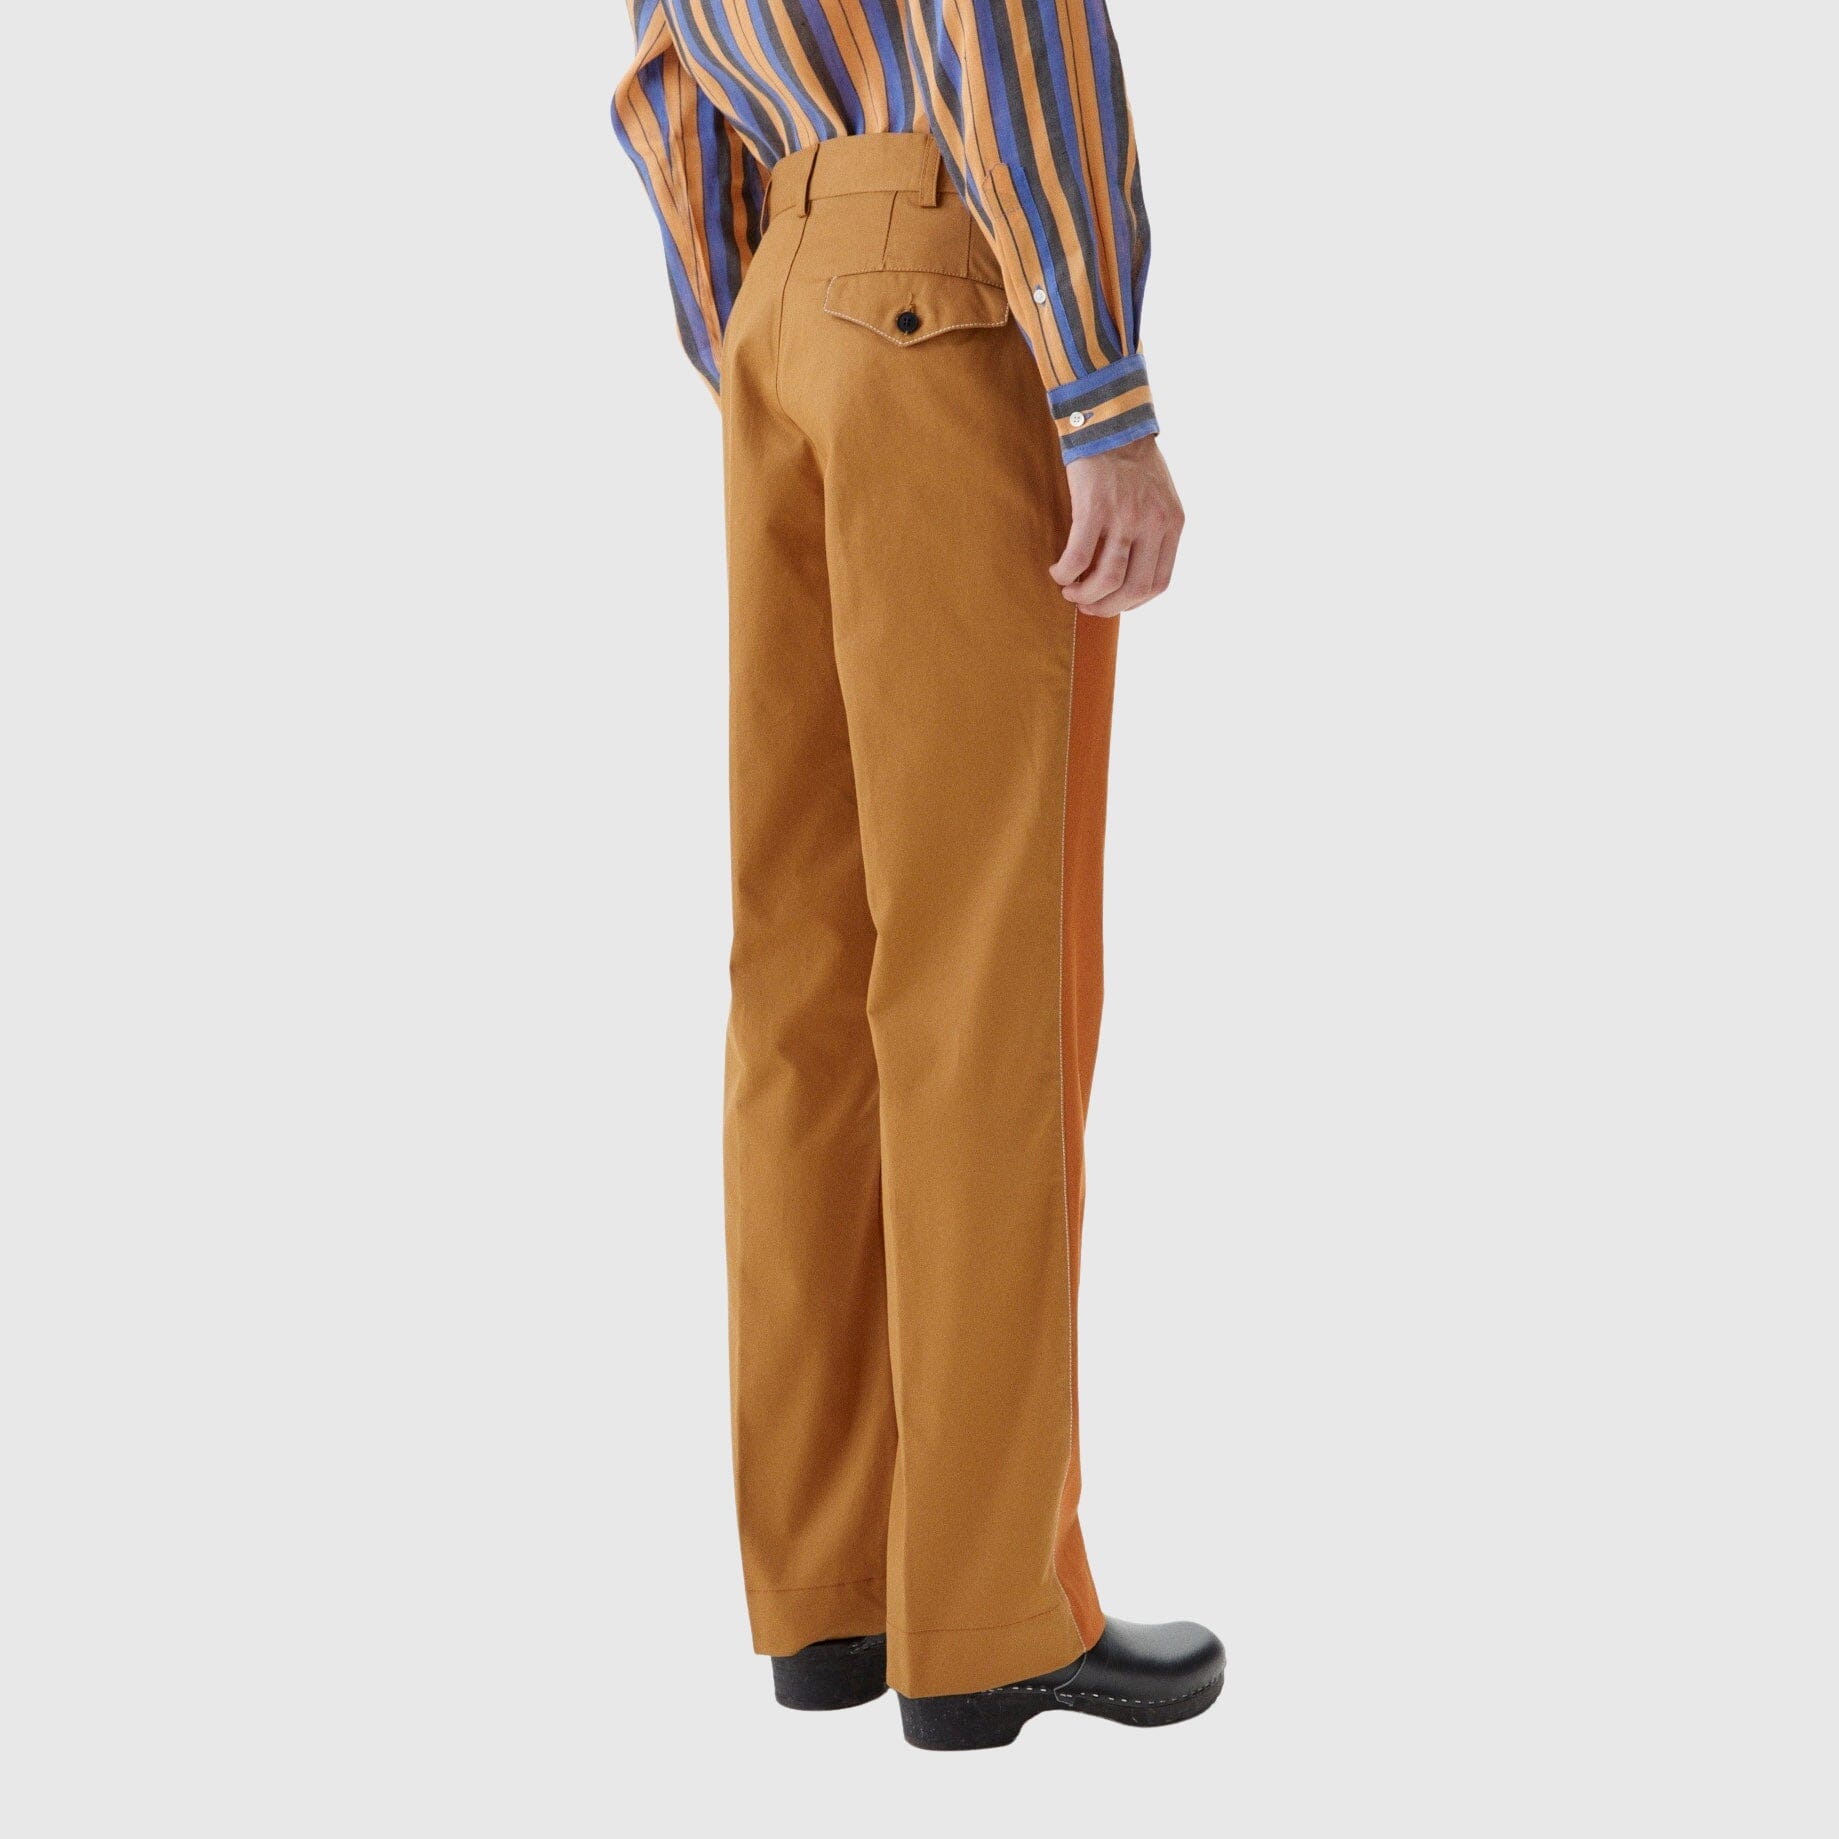 Schnayderman's Two Toned Dalet Trousers - Orange / Taupe Pants Schnayderman's 